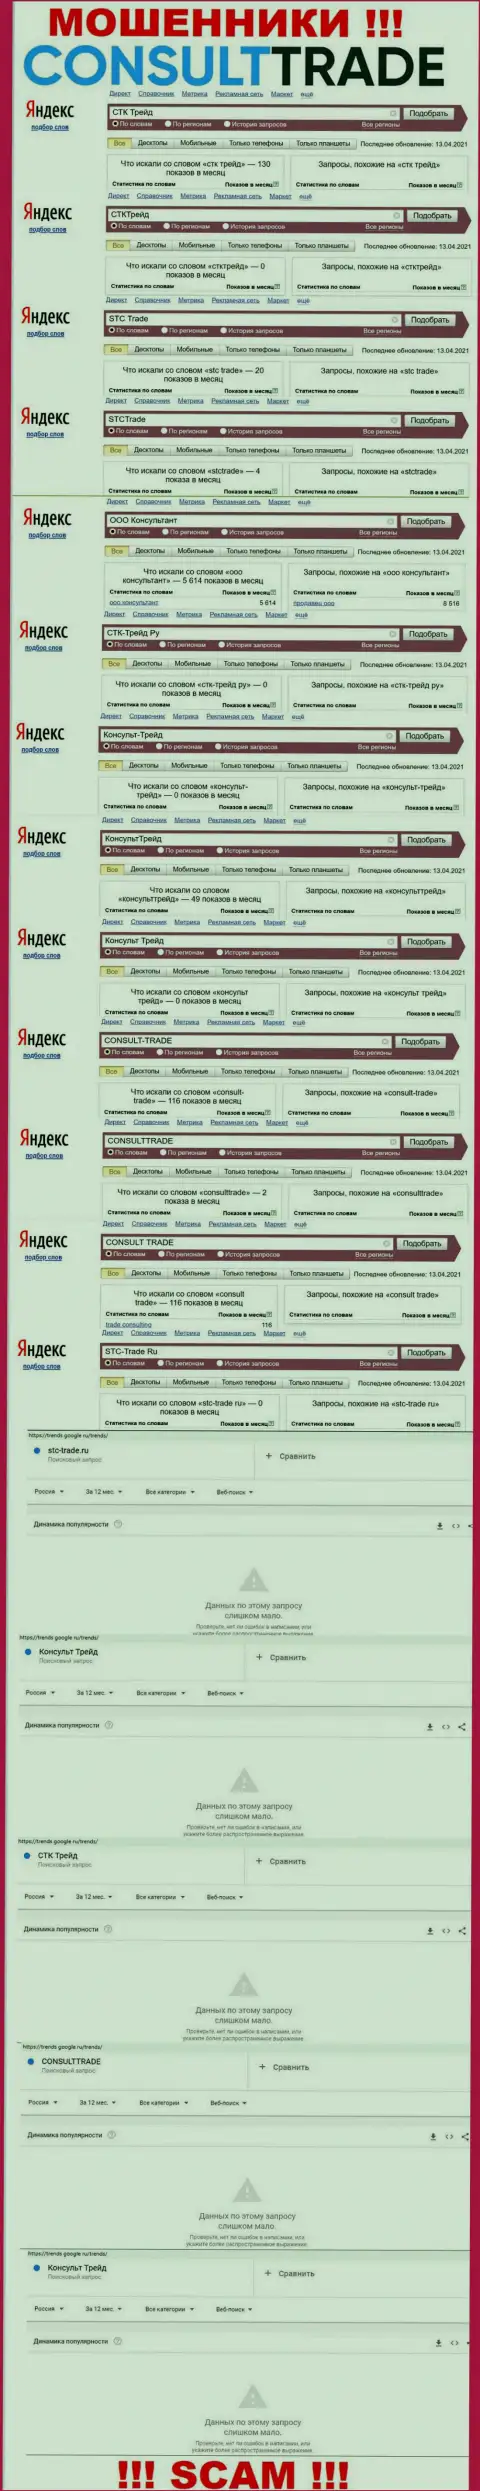 Скриншот результатов онлайн запросов по преступно действующей организации STC-Trade Ru